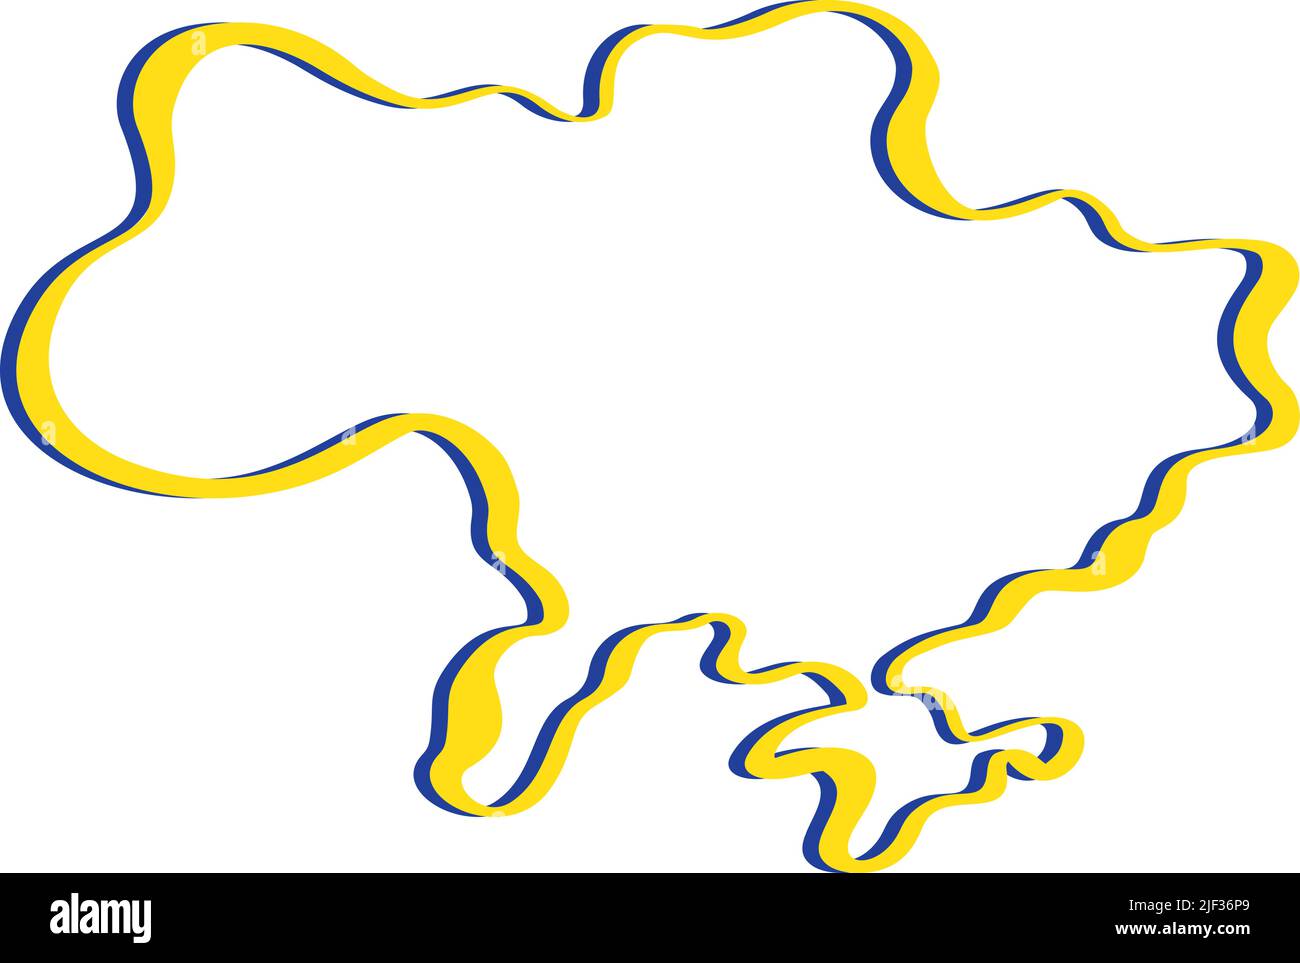 Linienkunst-Vektorkarte der Ukraine mit blauem und gelbem Pinselstrich. Rettet Die Ukraine. Designelement für Aufkleber, Banner, Poster, Karte. Isoliert Stock Vektor